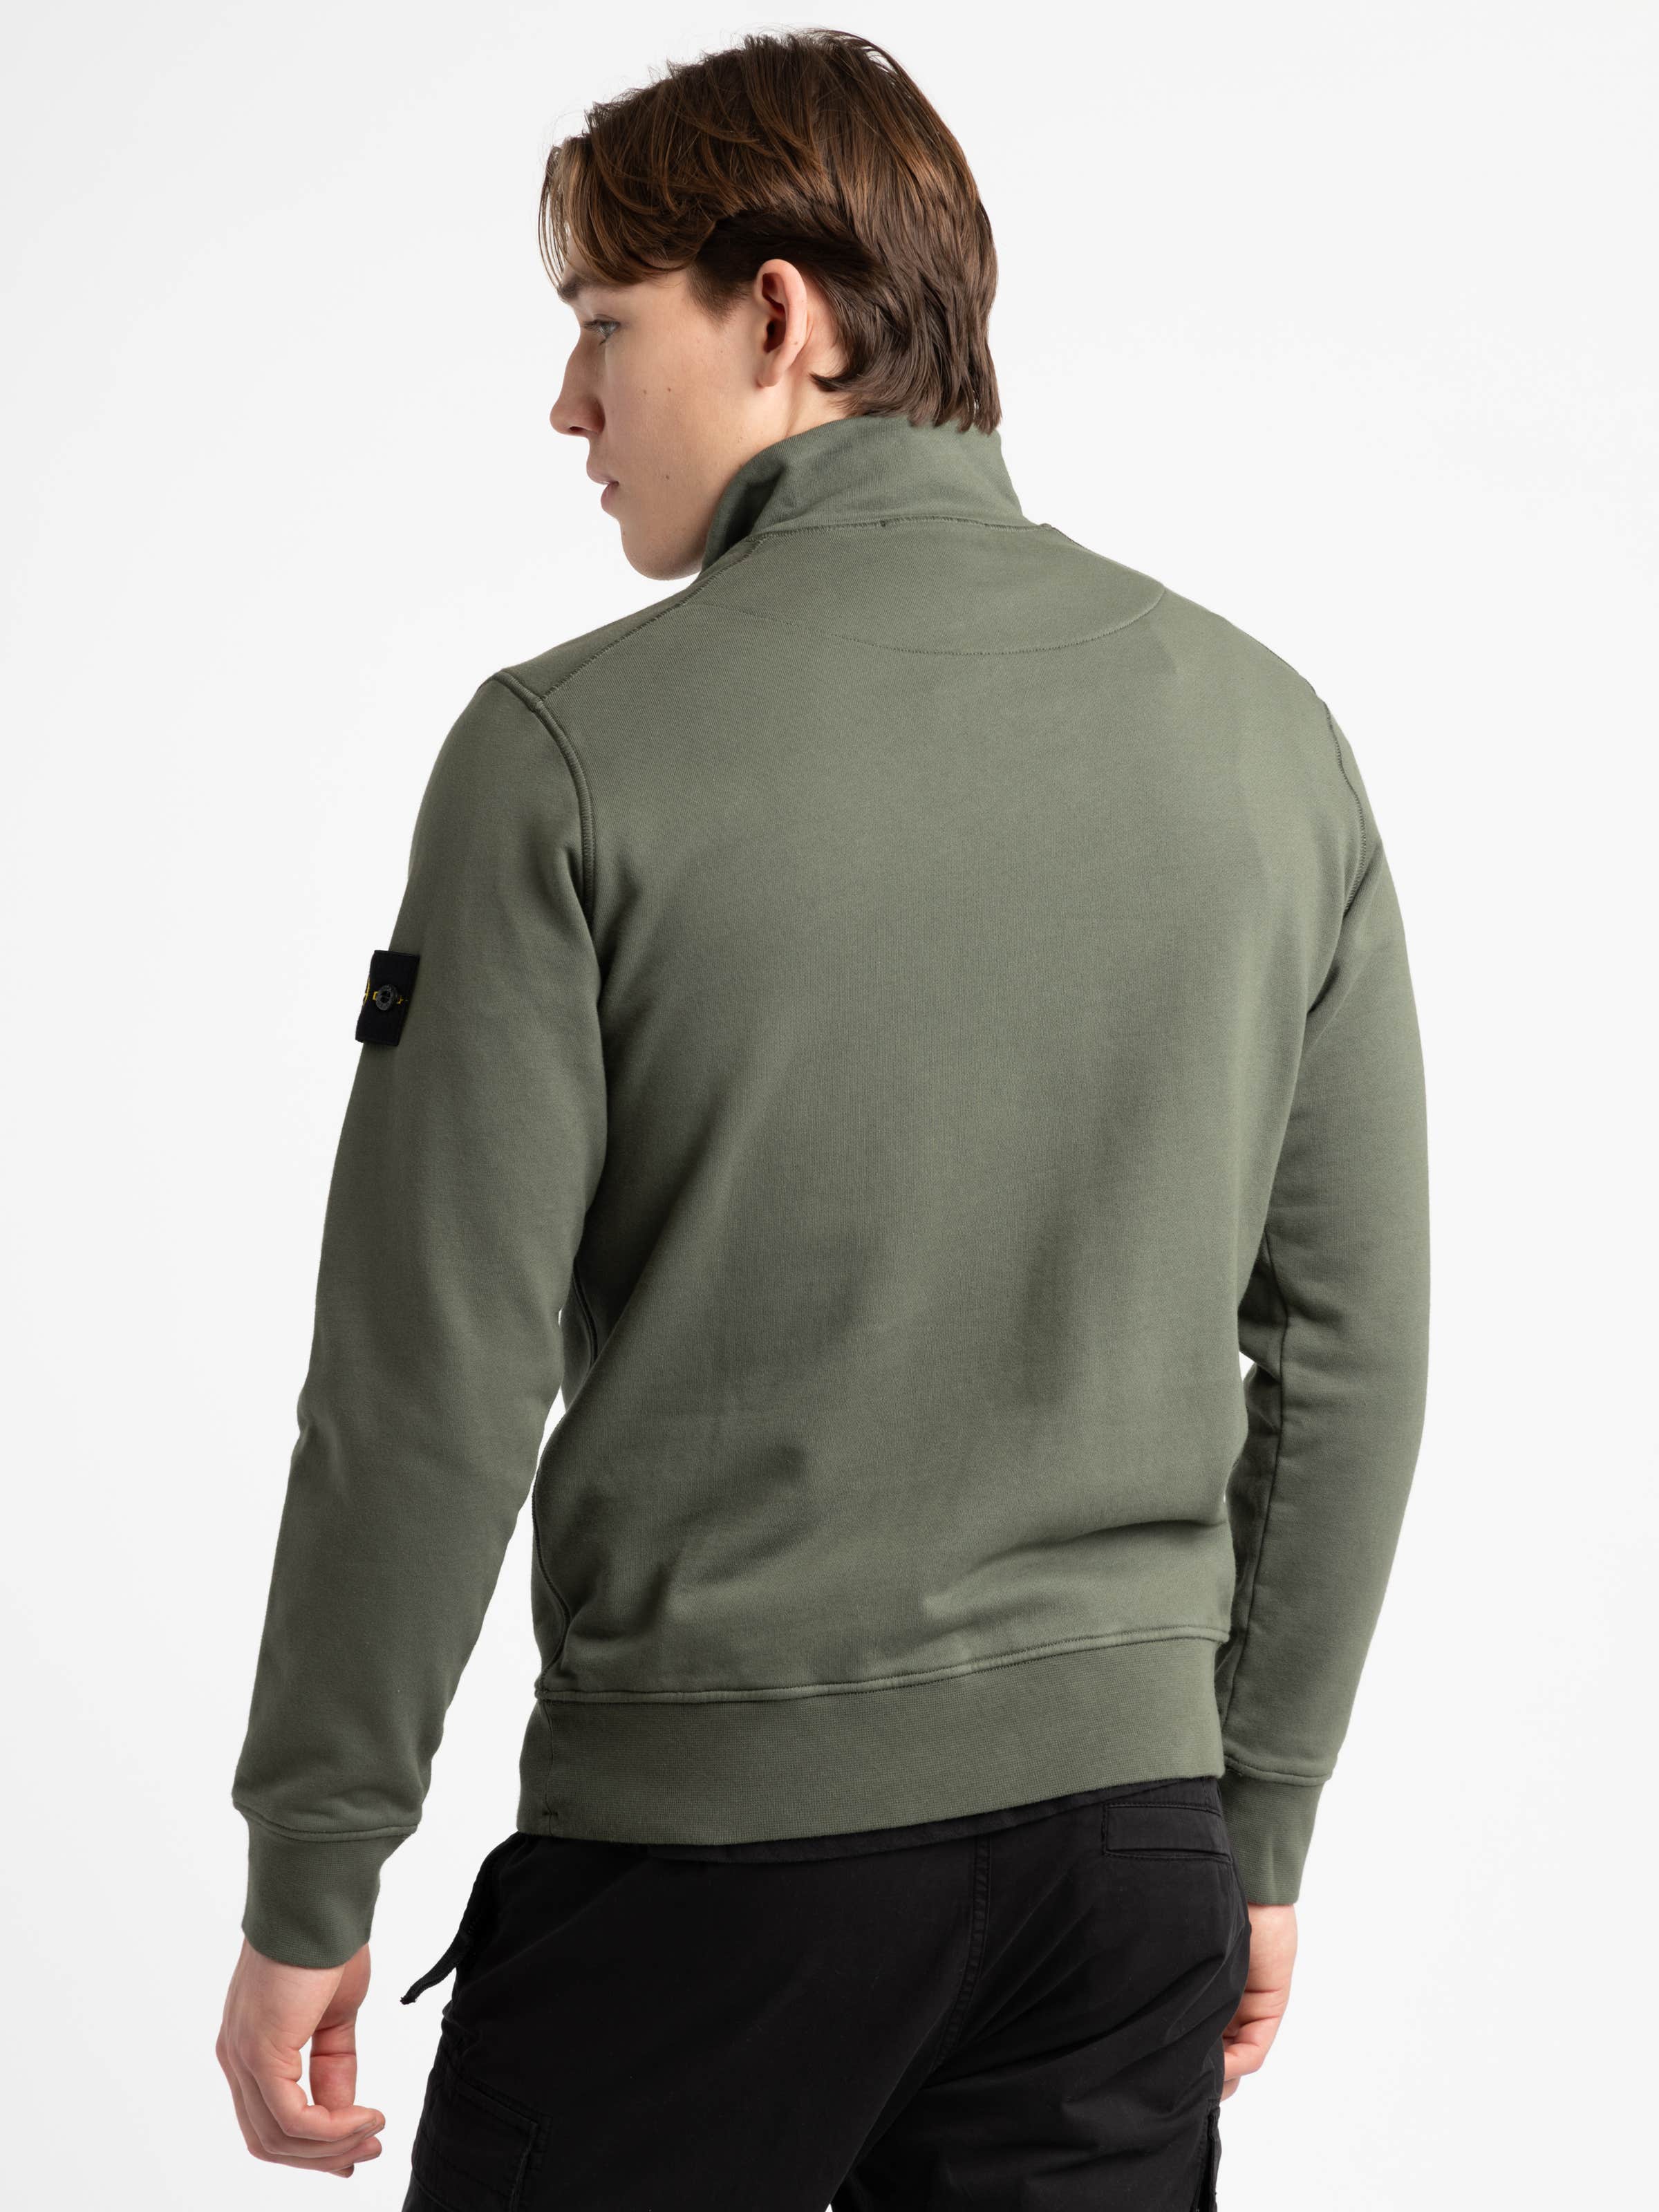 Green Cotton Quarter-Zip Sweater